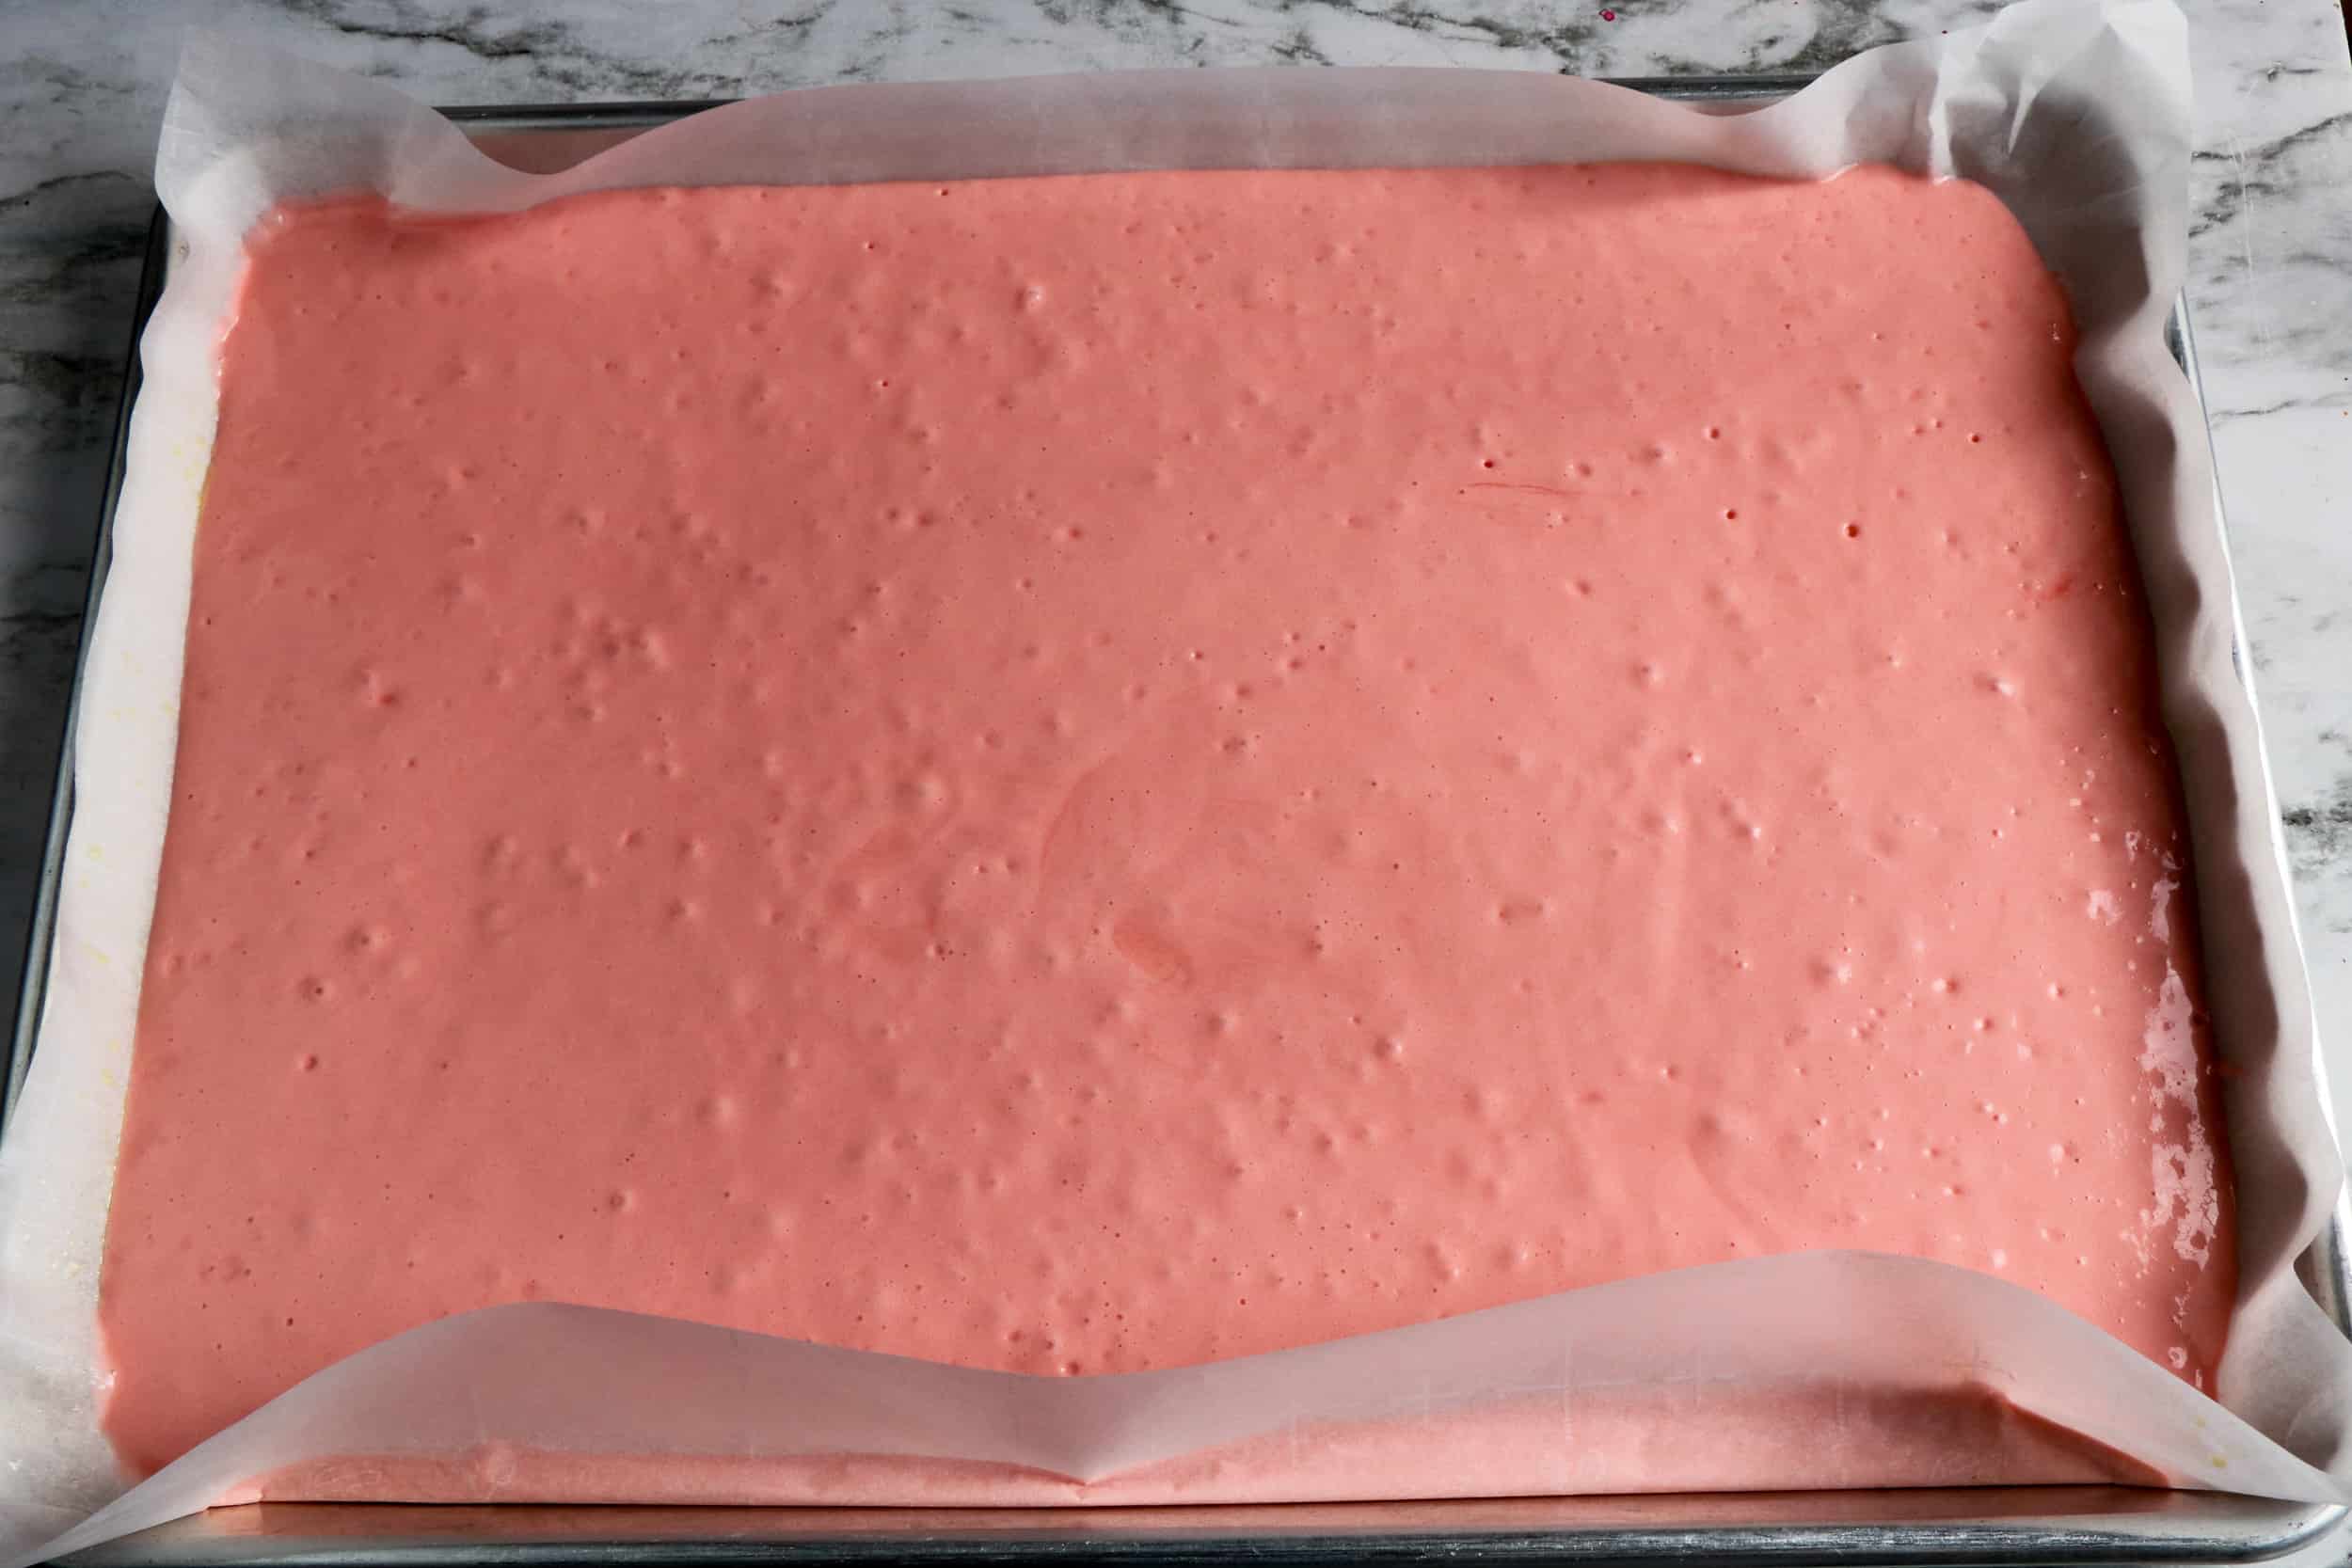 baked strawberry cake